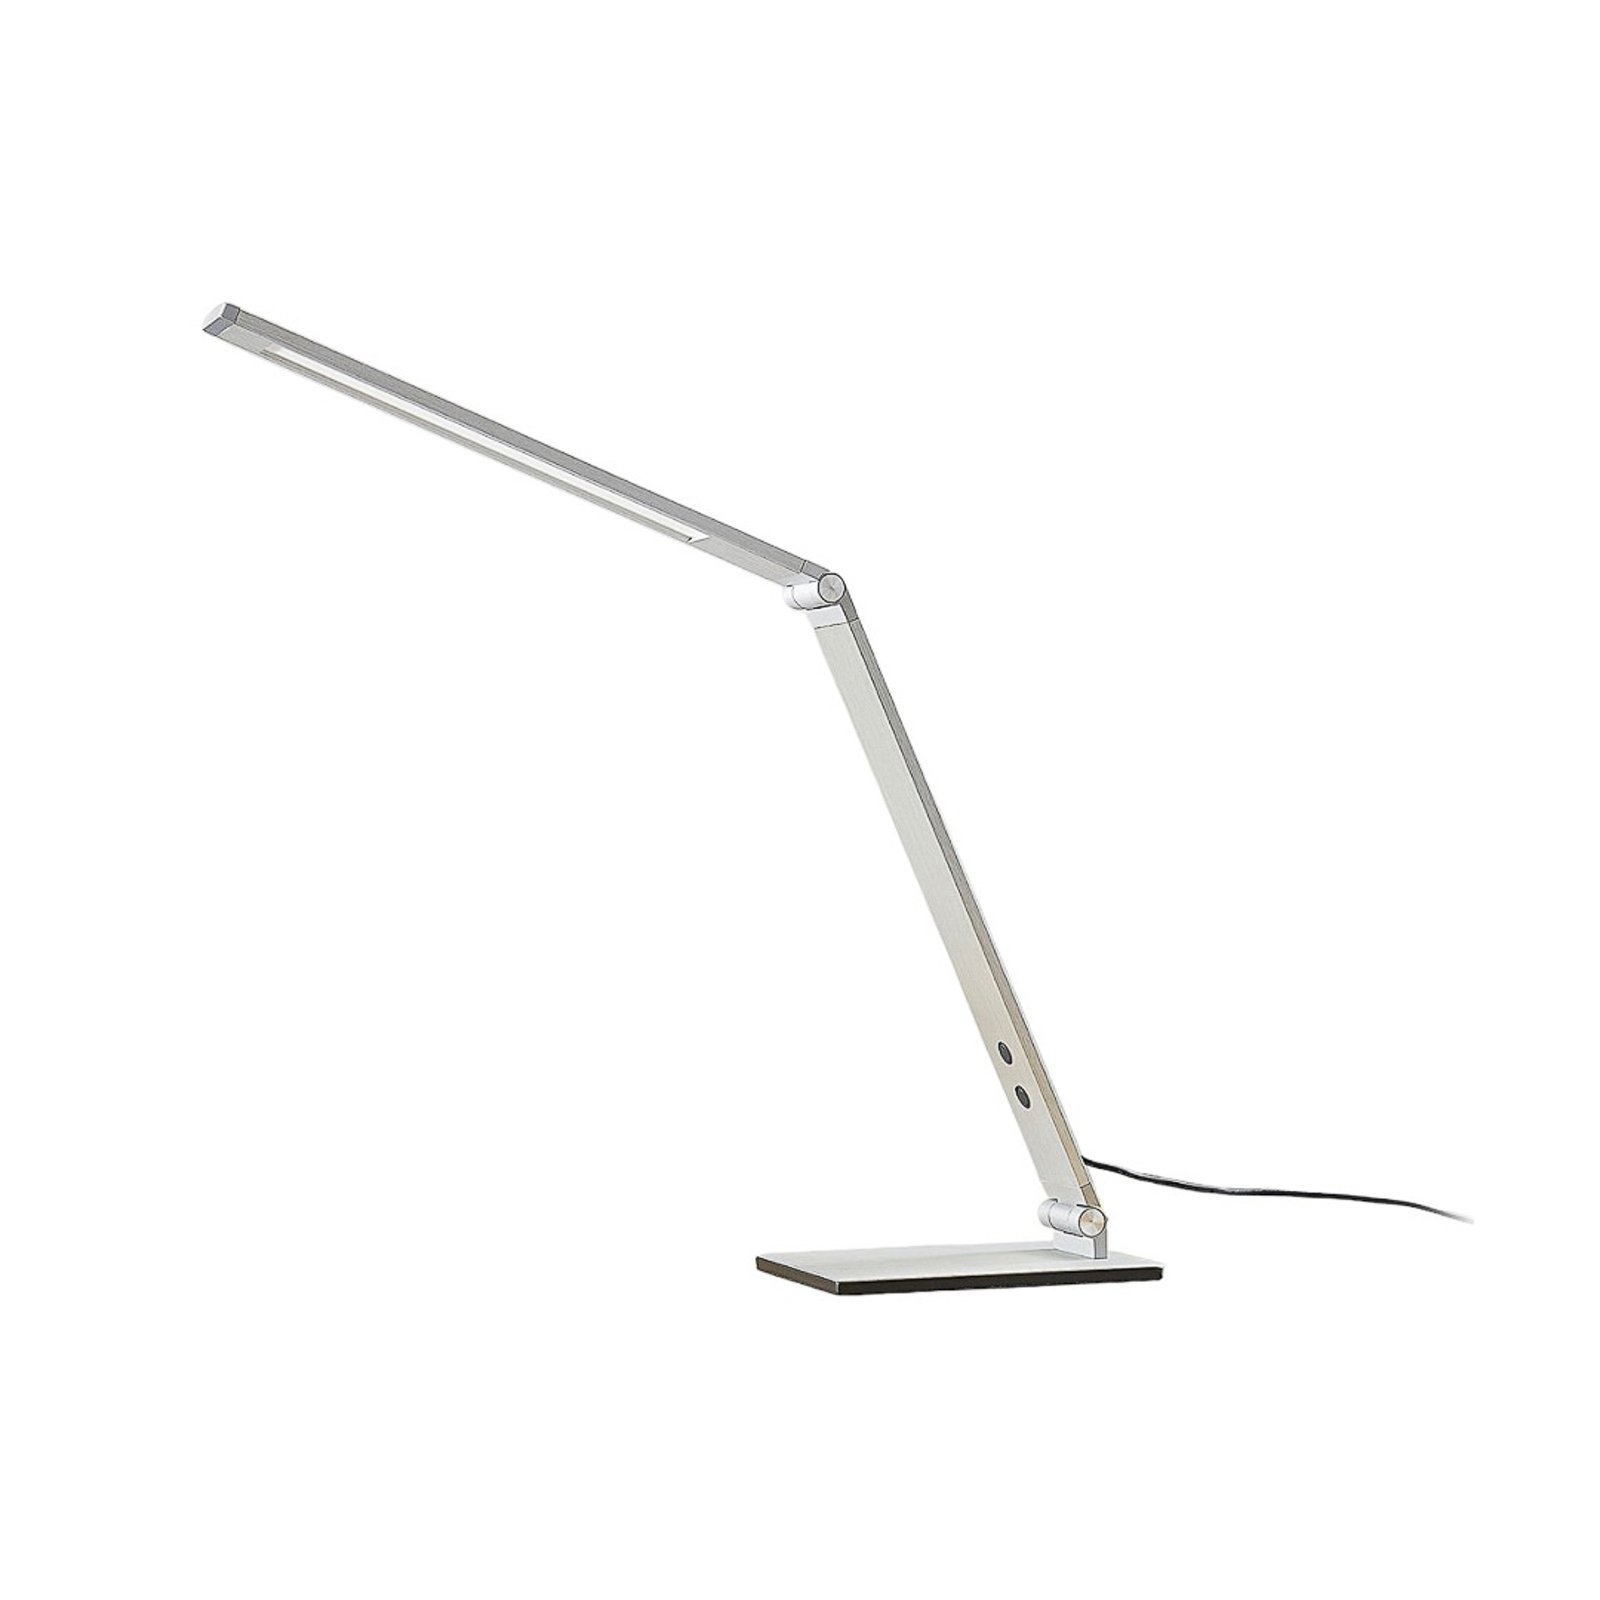 Alu-LED-Schreibtischlampe Nicano mit Dimmer